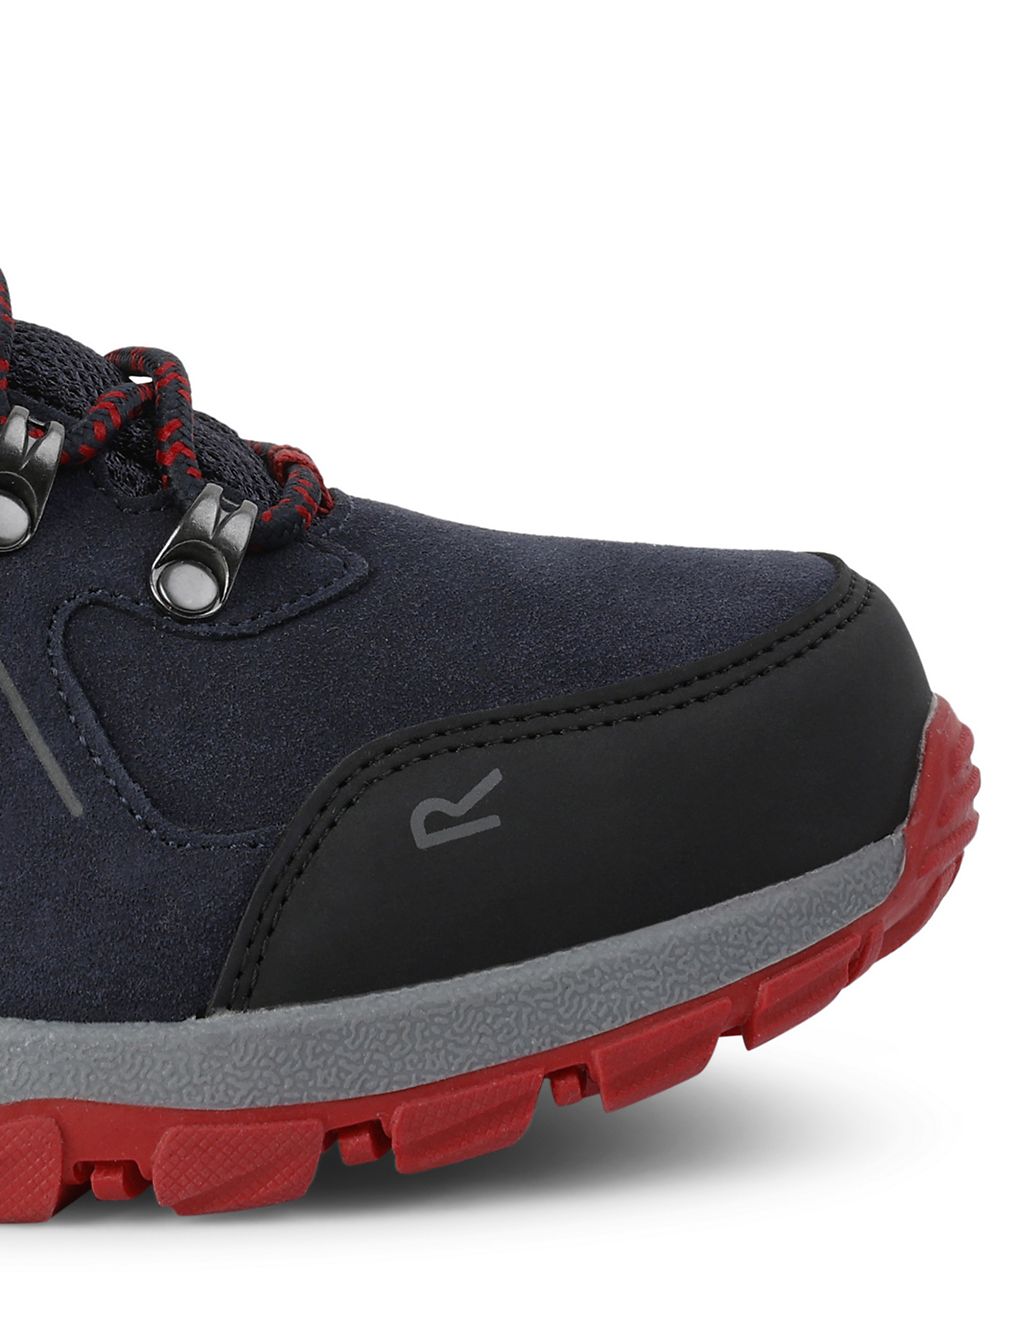 Vendeavour Suede Waterproof Walking Shoes 6 of 9